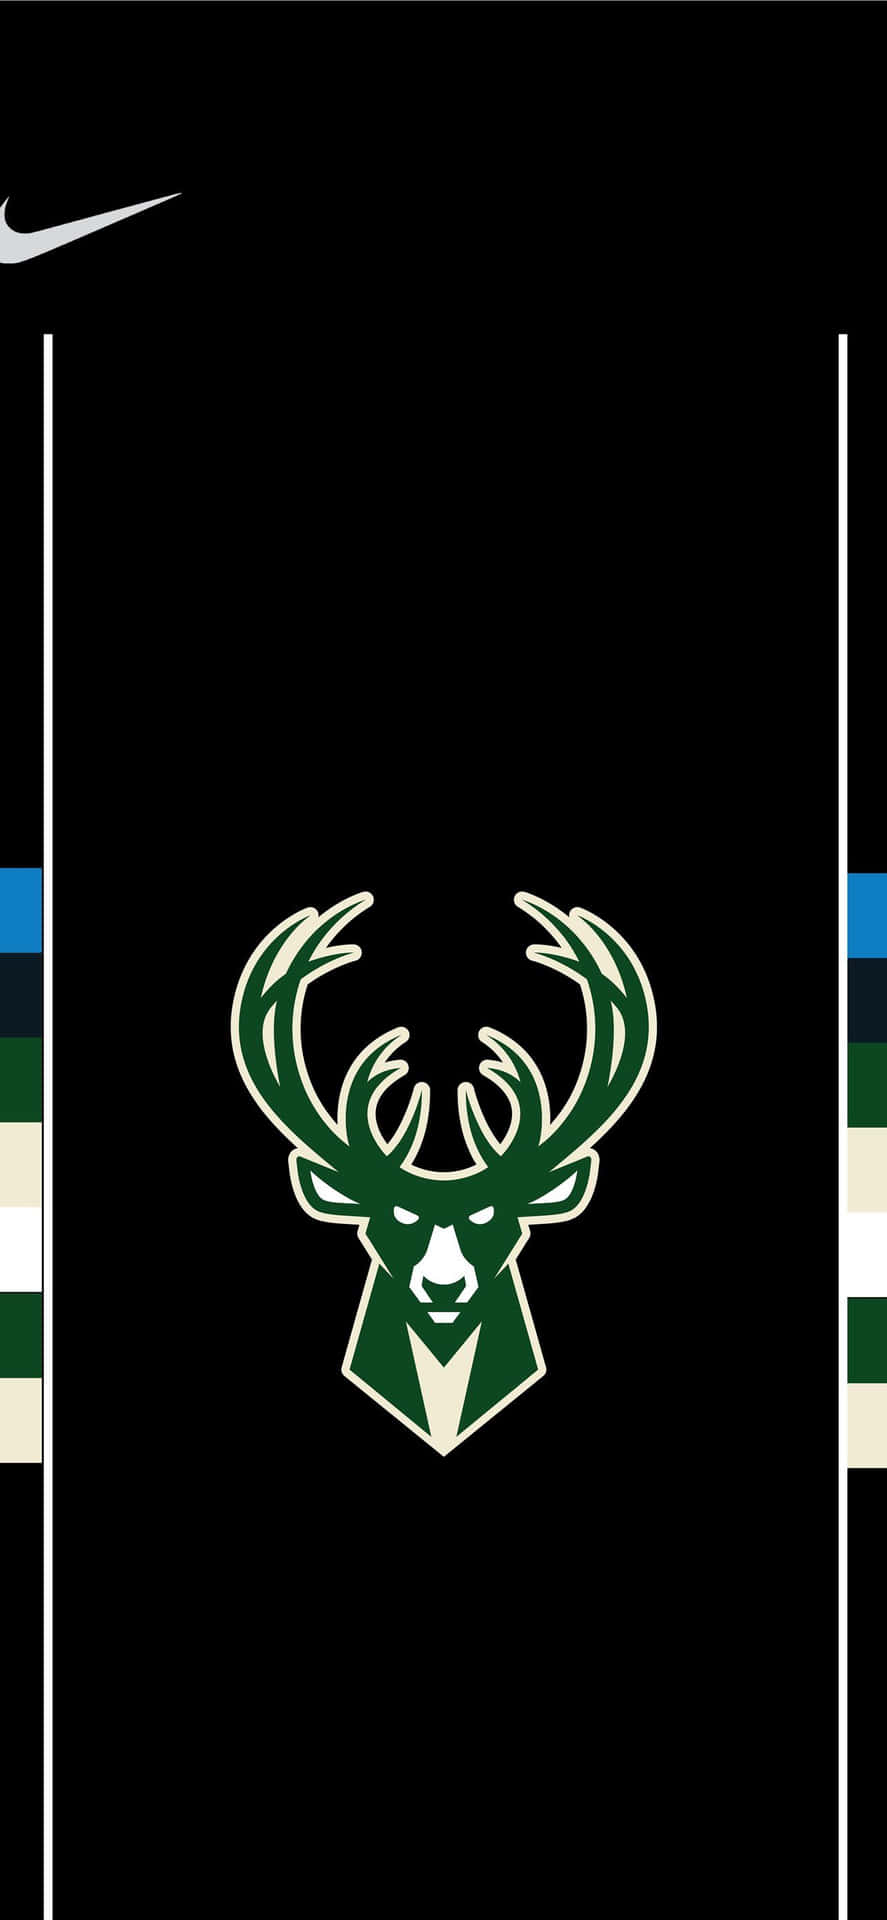 Det officielle logo for Milwaukee Bucks er fremvist. Wallpaper